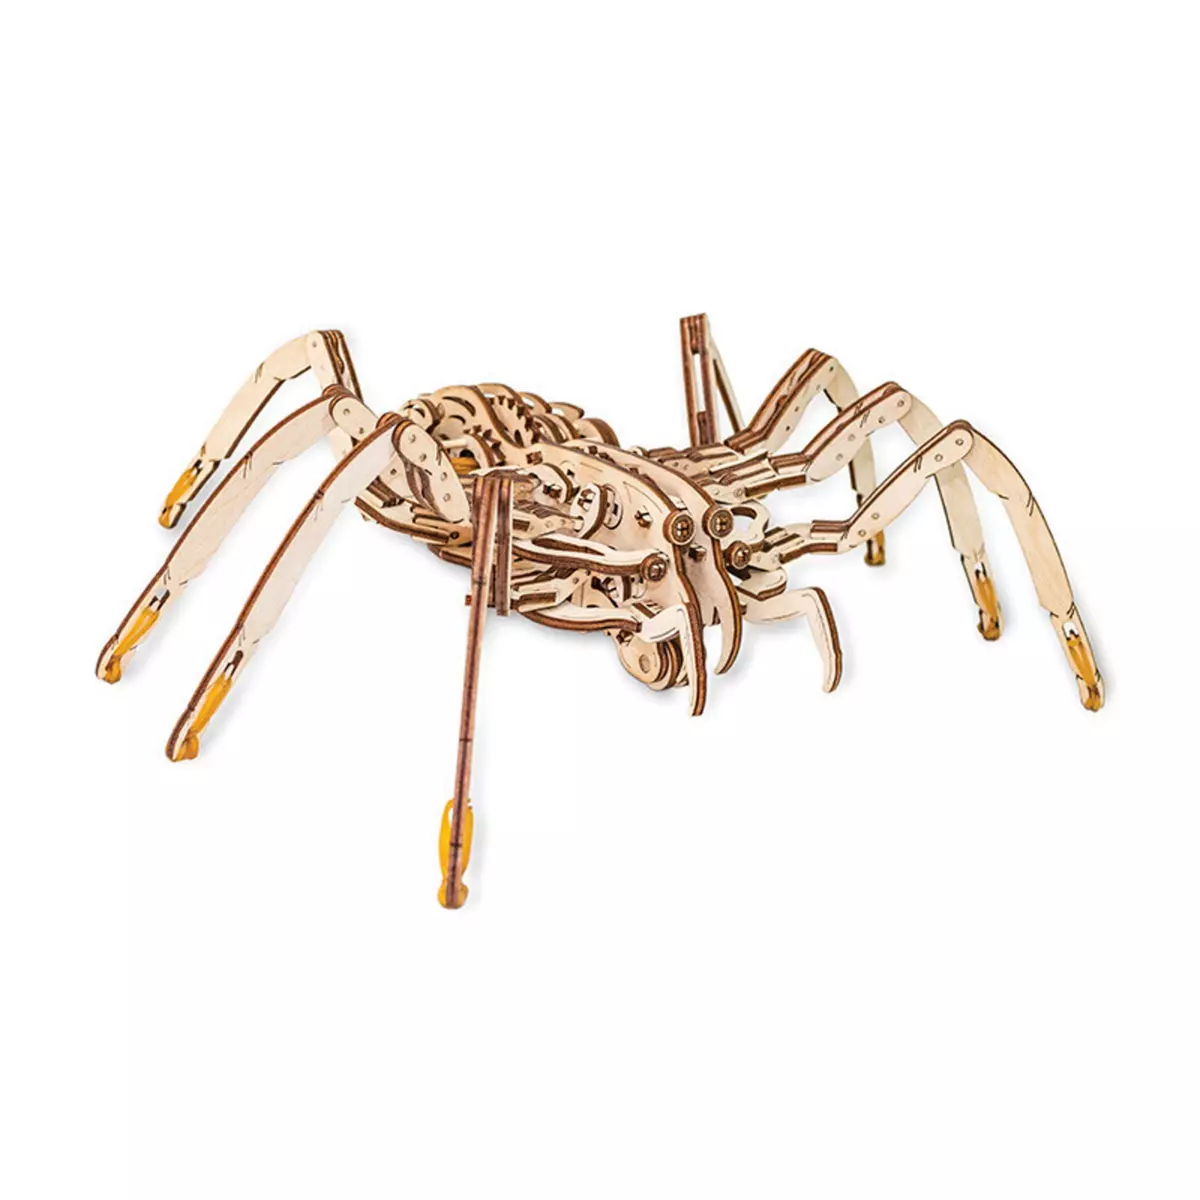  Maquette 3D en bois - Araignée 35 cm